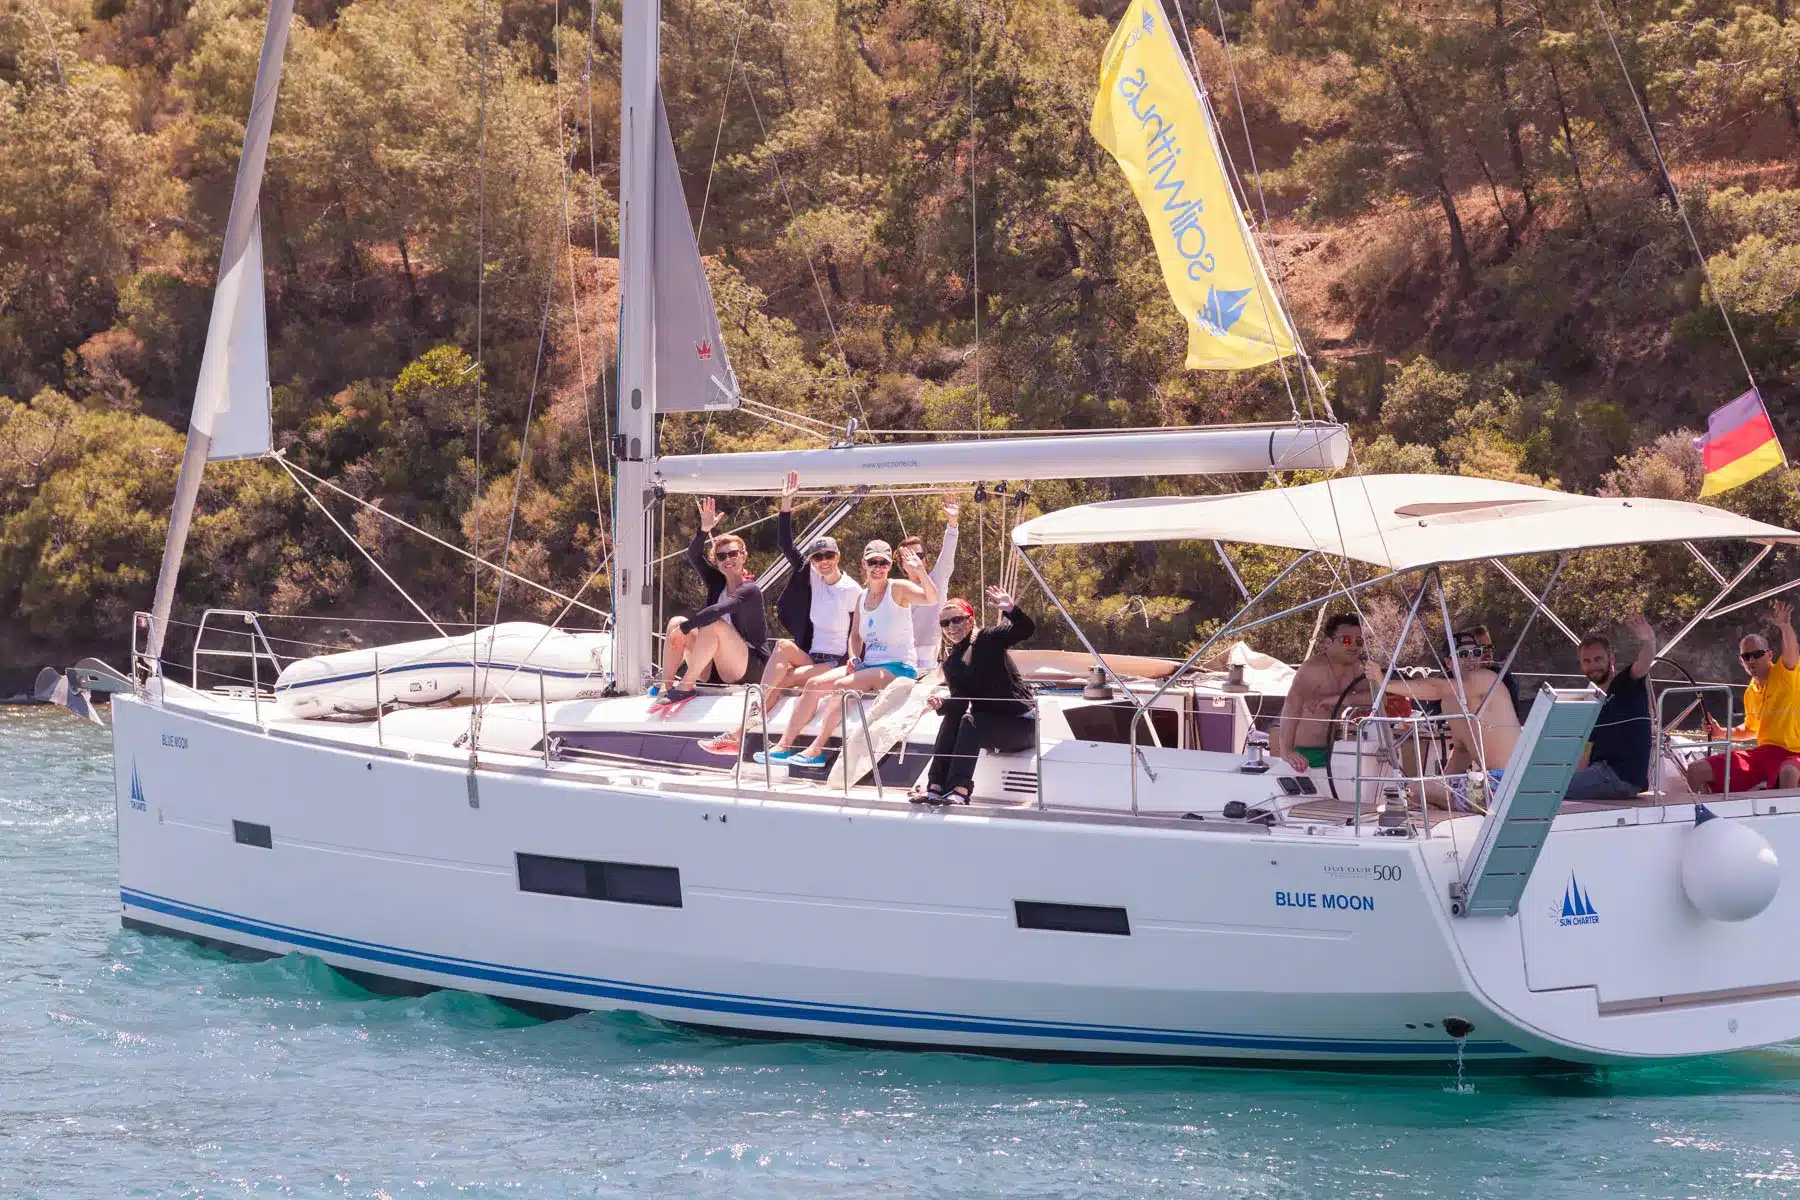 Eine Gruppe von Menschen genießt einen sonnigen Tag auf einem großen weißen Segelboot namens „Blue Moon“. Sie winken und lächeln in die Kamera, wahrscheinlich während ihres Skippertrainings. Das Segelboot liegt auf einem ruhigen Gewässer, im Hintergrund ist eine bewaldete Küste zu sehen. Am Mast des Bootes wehen Flaggen.